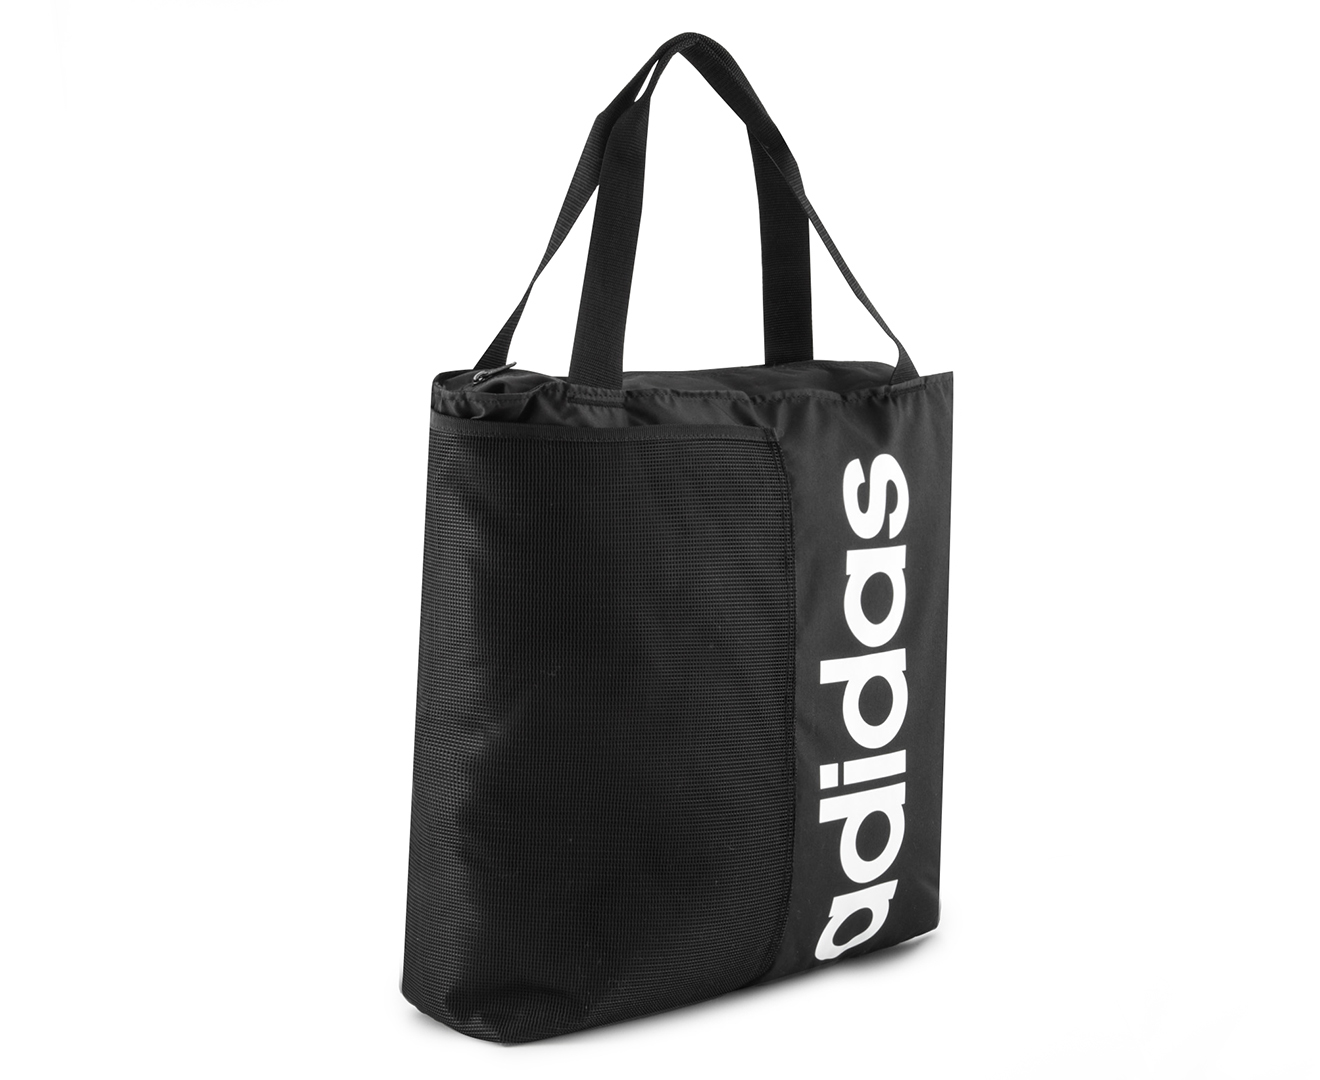 Adidas 30L Linear Tote Bag - Black/ White | Catch.com.au